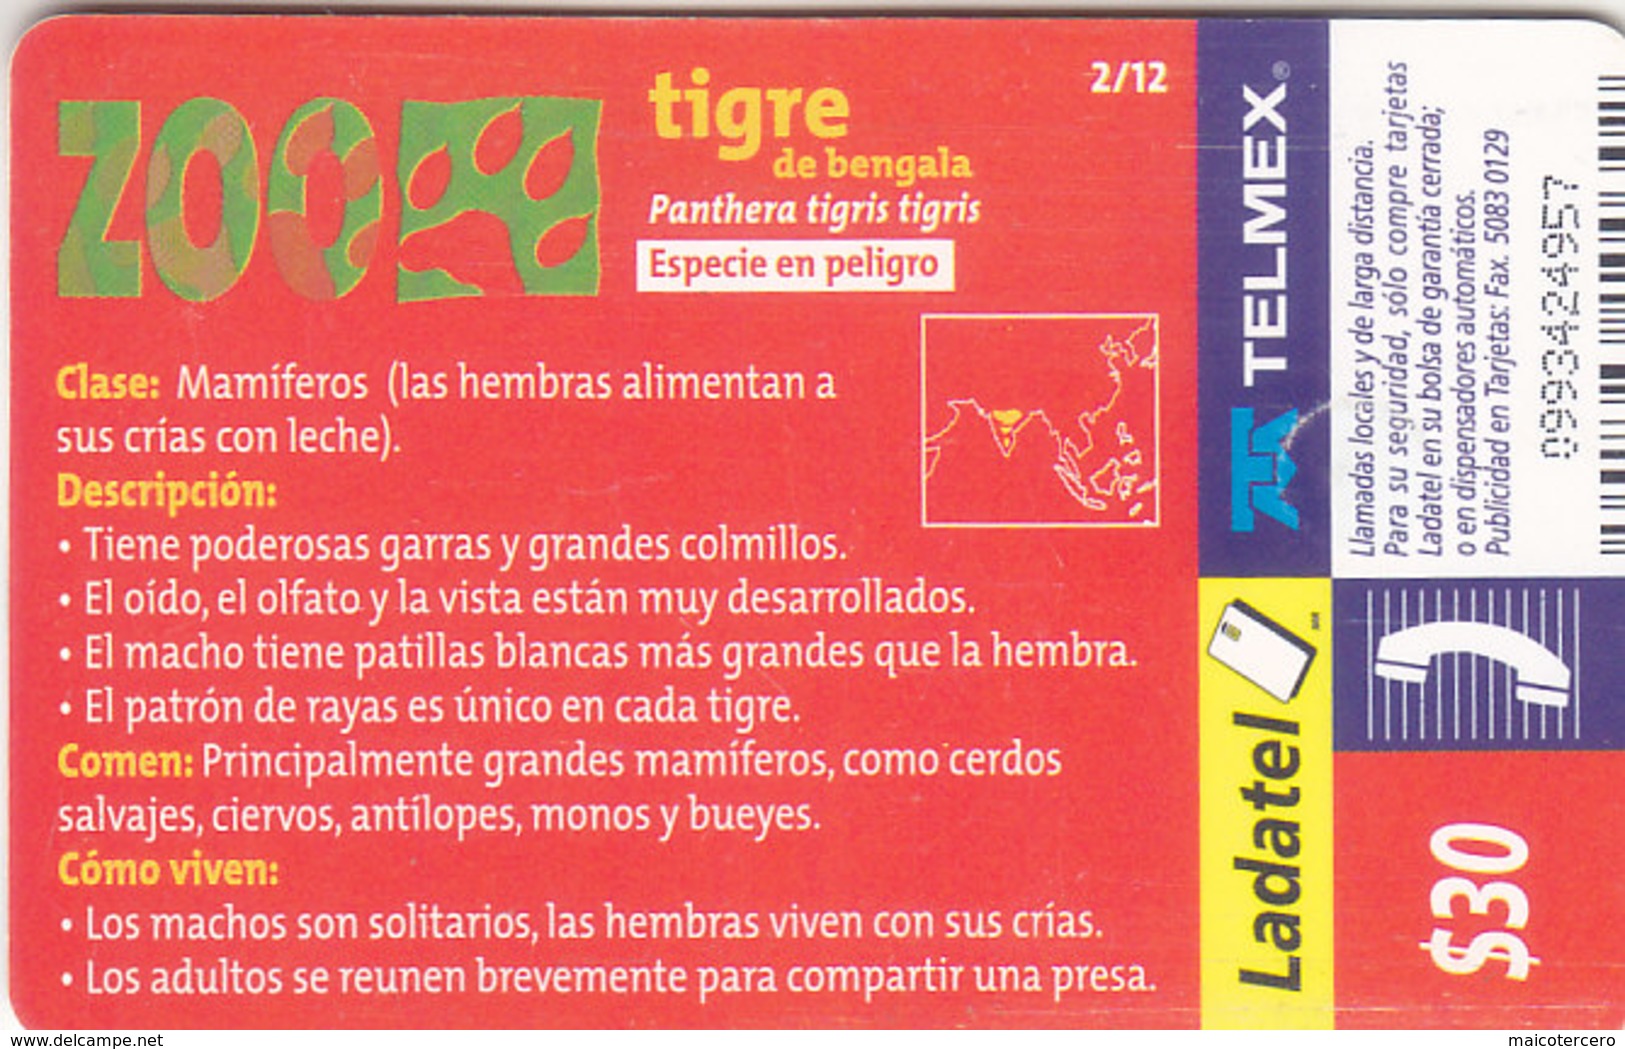 Mexico Phonecard LADATEL TELMEX BENGAL TIGER  No Credit Good Condition - Mexico